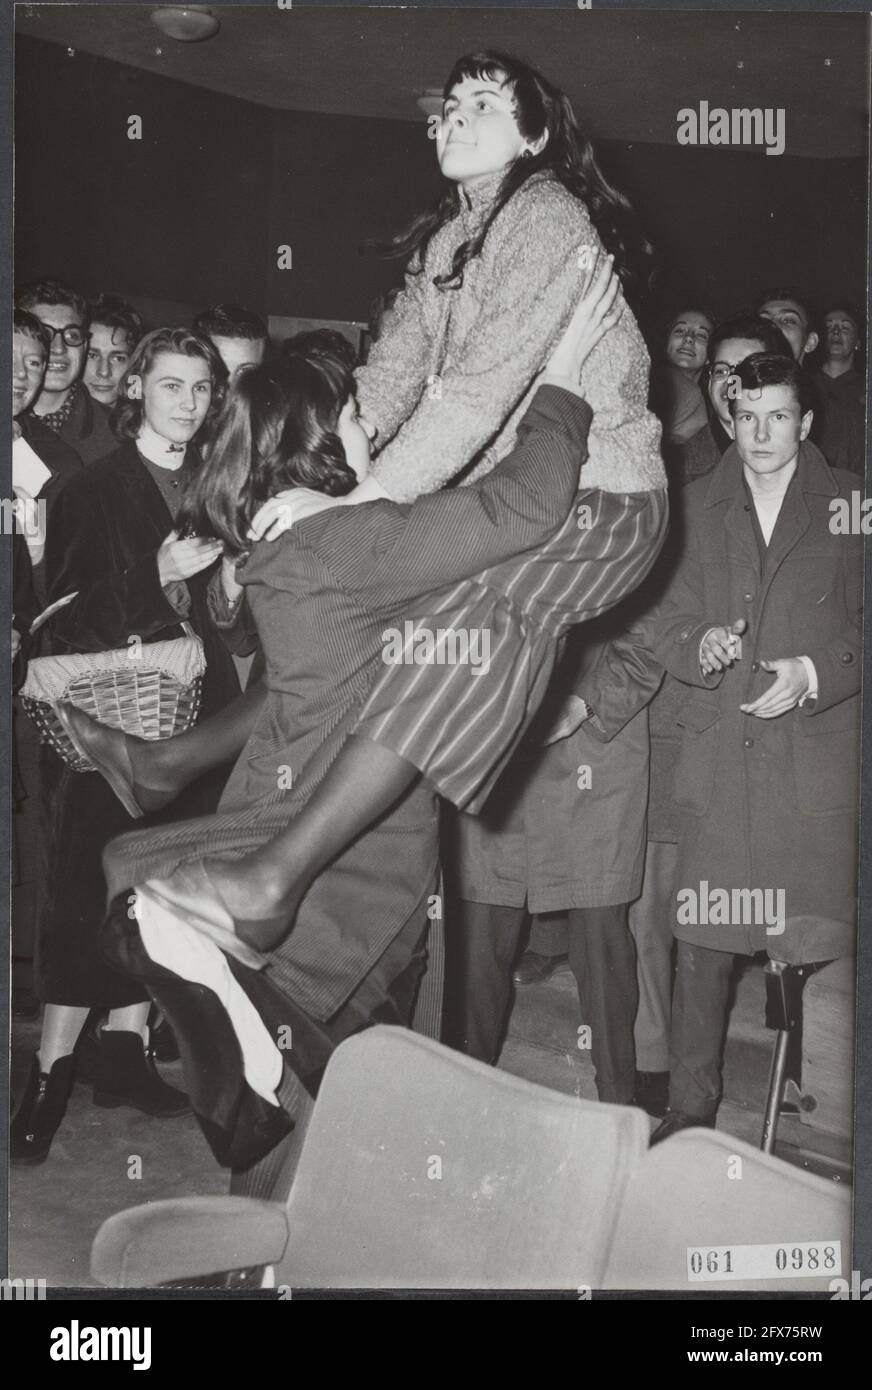 À Amsterdam, à partir de vendredi, les disques du roi Elvis Presley, rock américain, seront joués dans trois cinémas pendant la pause déjeuner, comme une publicité pour le film Love Me Tender qui sera sorti la semaine suivante. Au premier père, un grand nombre de jeunes enthousiastes étaient présents qui, à cause de la musique en mouvement, ne restaient pas longtemps dans leurs sièges et ont commencé à danser Rock and Roll entre les rangs., 7 décembre 1956, cinémas, danse, Jeunesse, musique, pays-Bas, Agence de presse du XXe siècle photo, nouvelles à retenir, documentaire, photographie historique 1945-1990 Banque D'Images